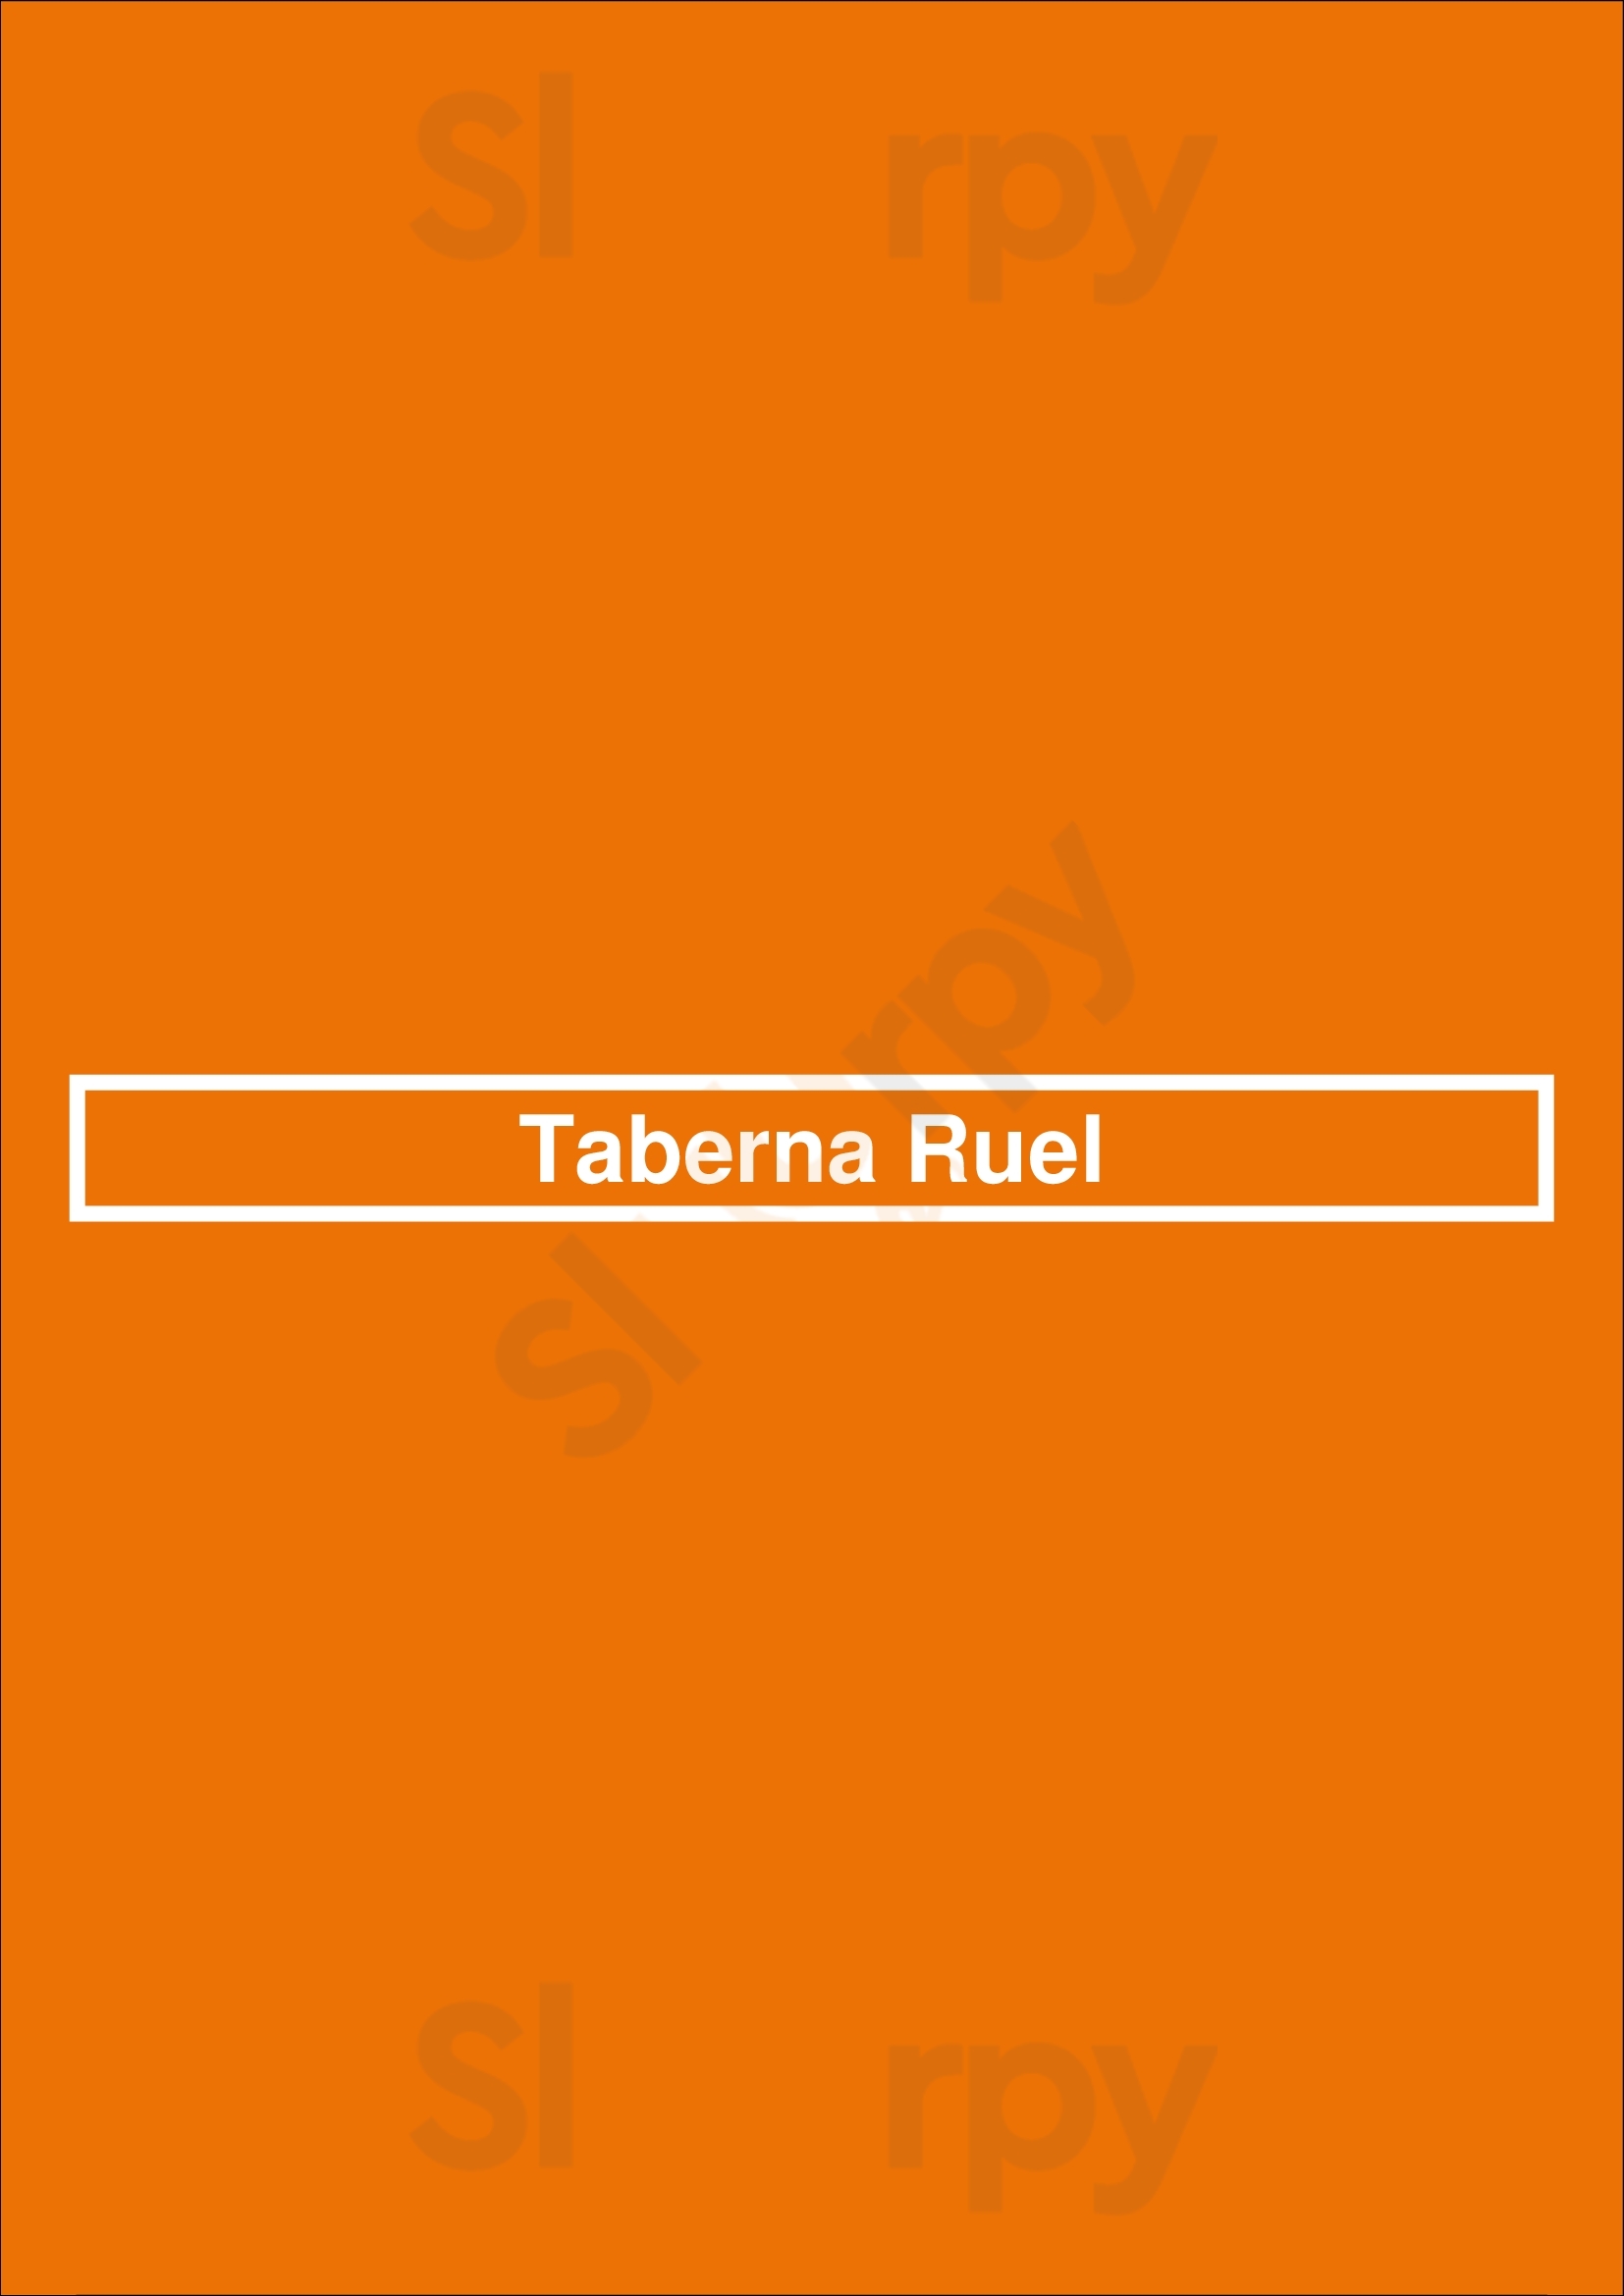 Taberna Ruel Funchal Menu - 1